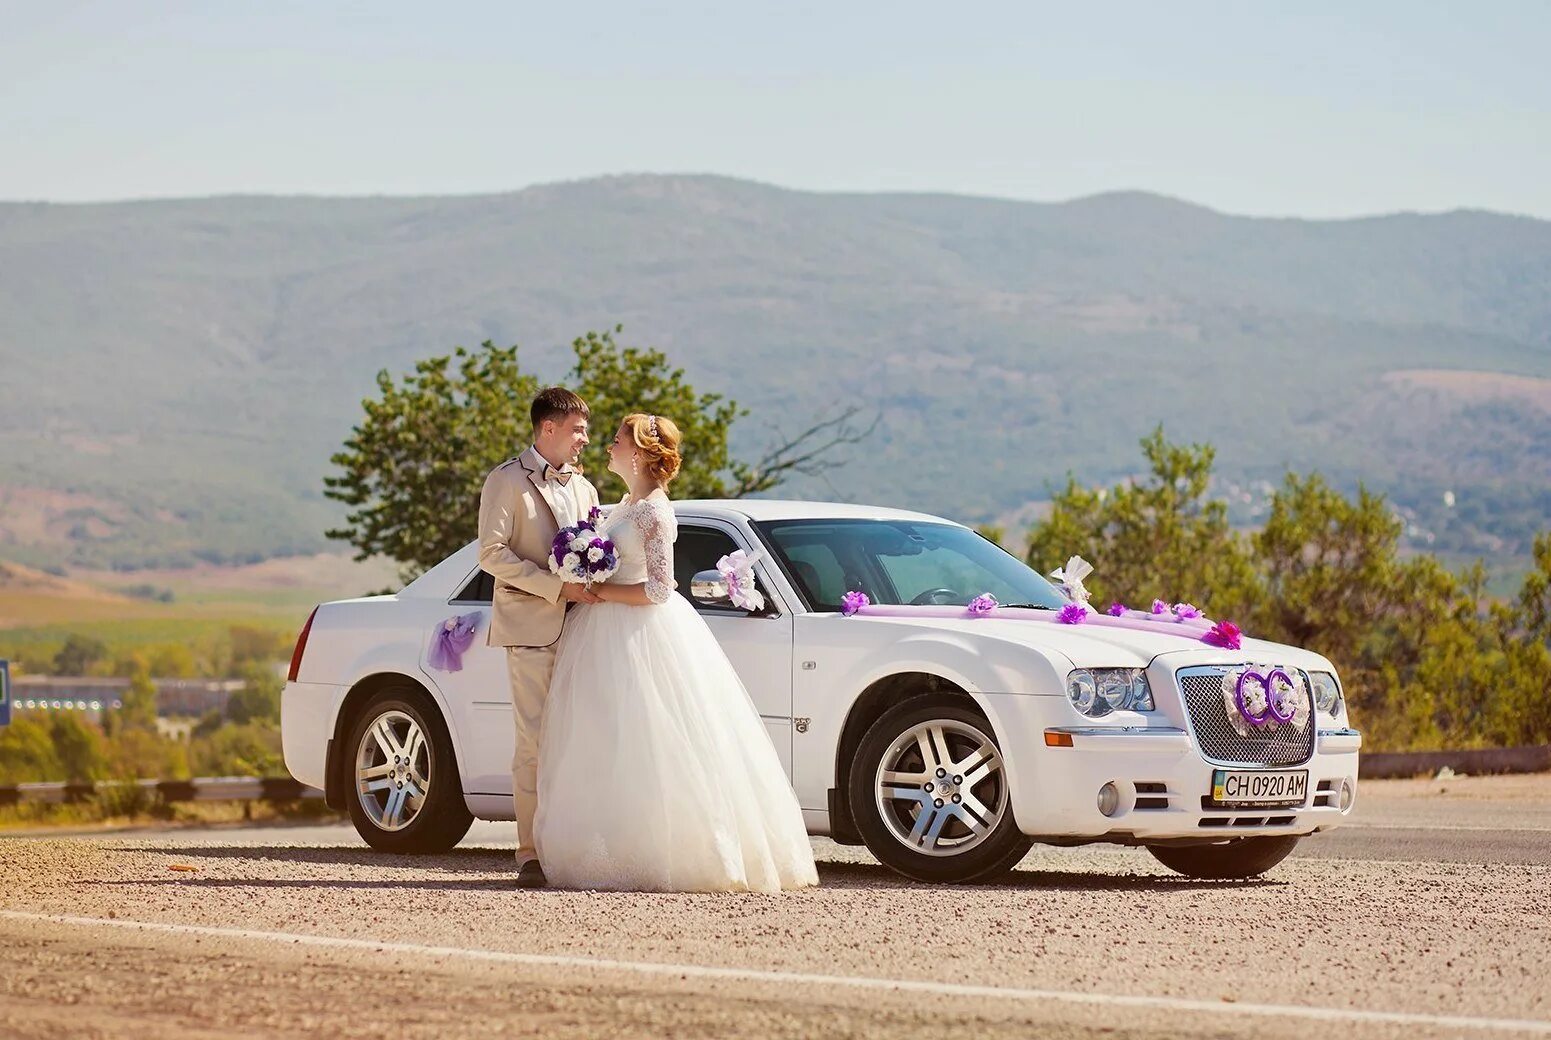 Машина будет свадьба. Свадебная машина. Невеста в машине. Свадебный автомобиль невесты. Свадебная спортивная машина.